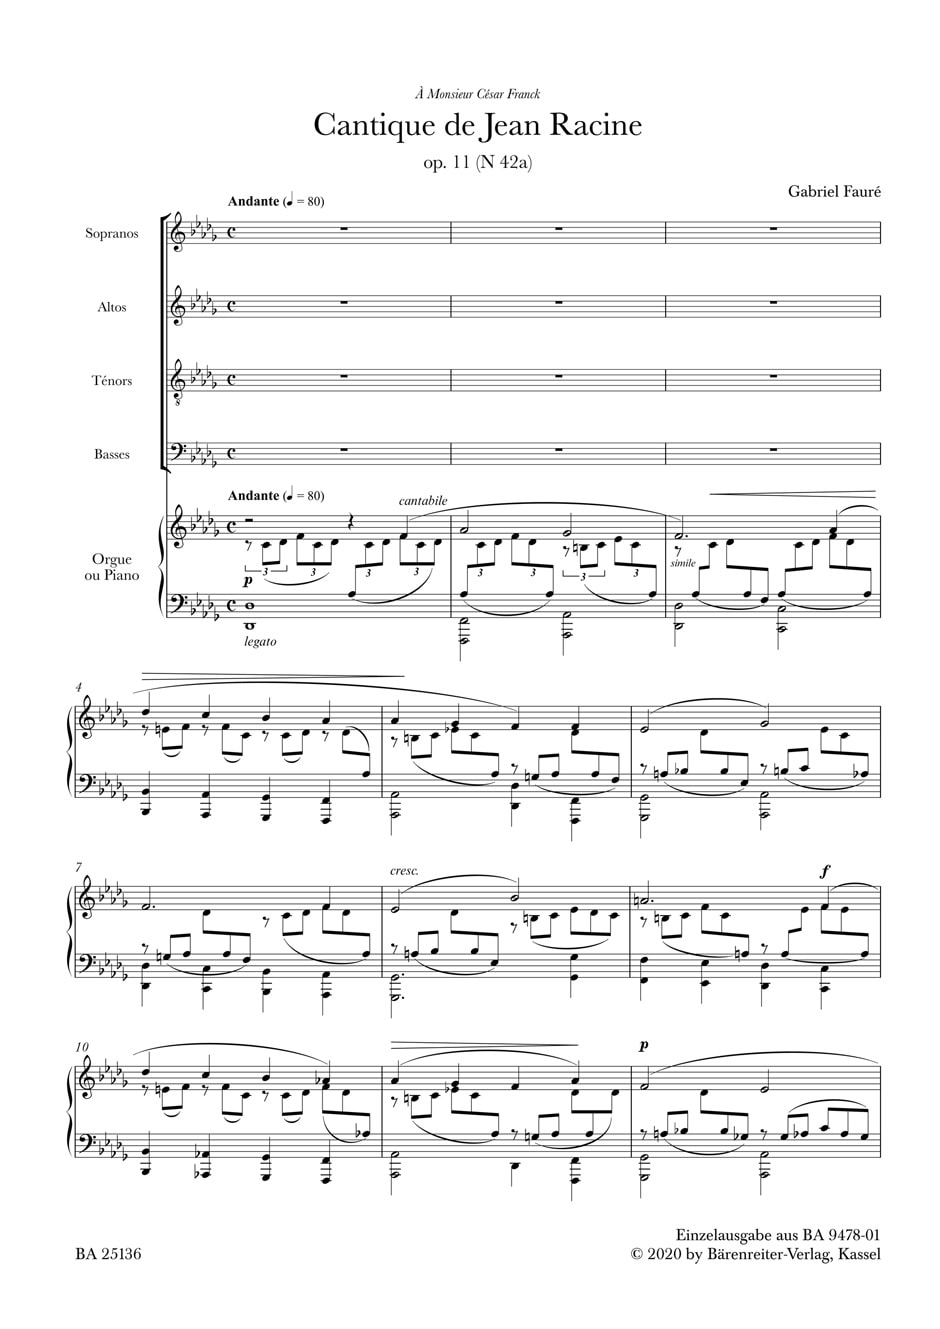 Faure: Cantique de Jean Racine published by Barenreiter - Vocal Score